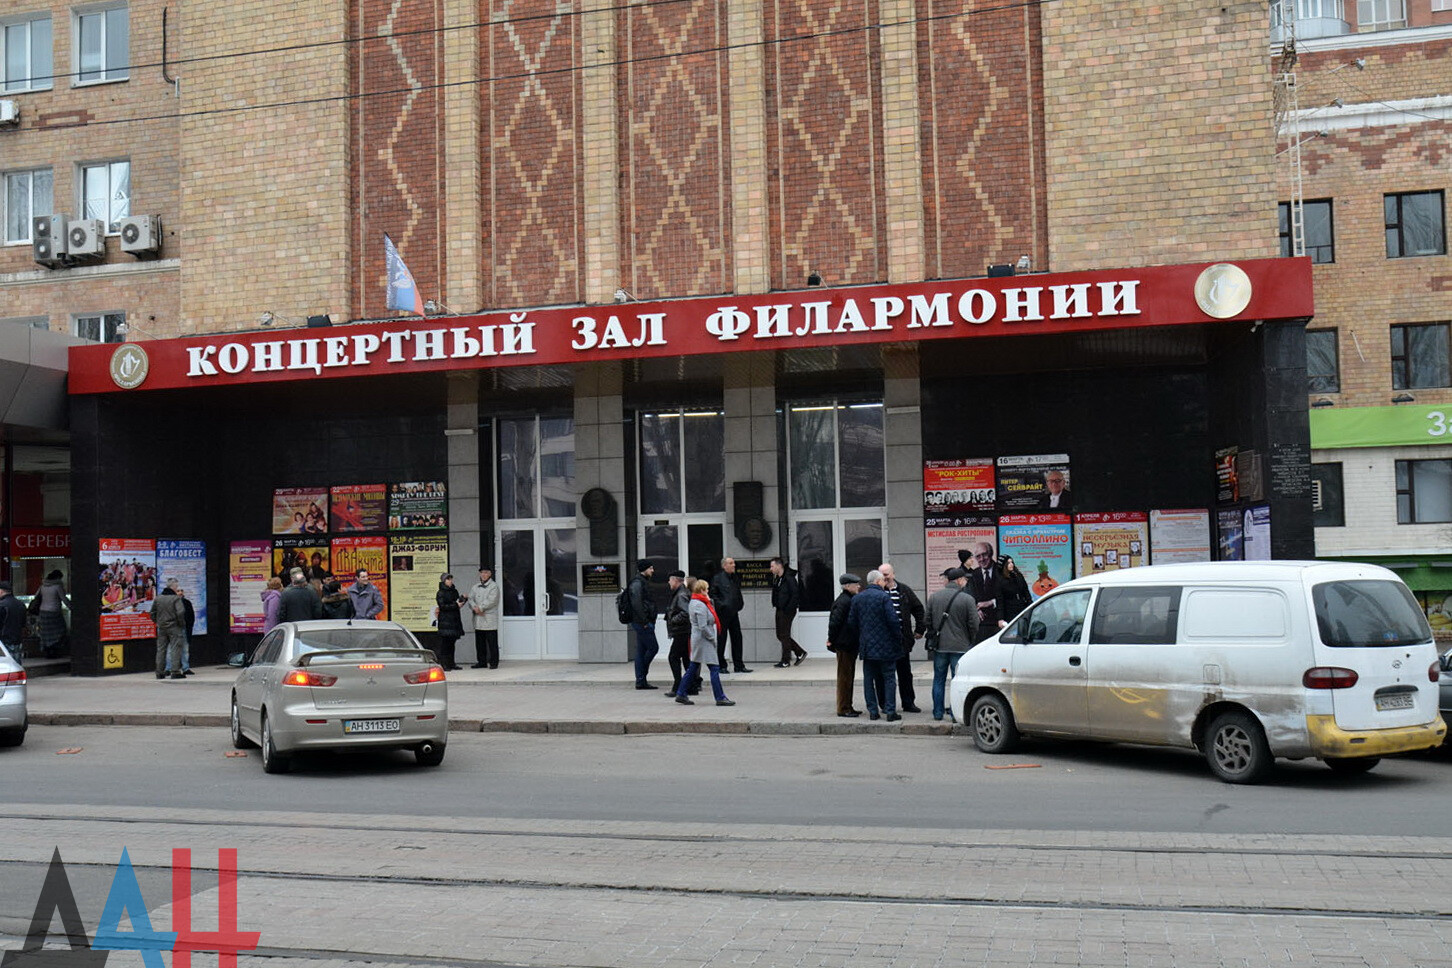 Донецкая областная филармония (Донецк)